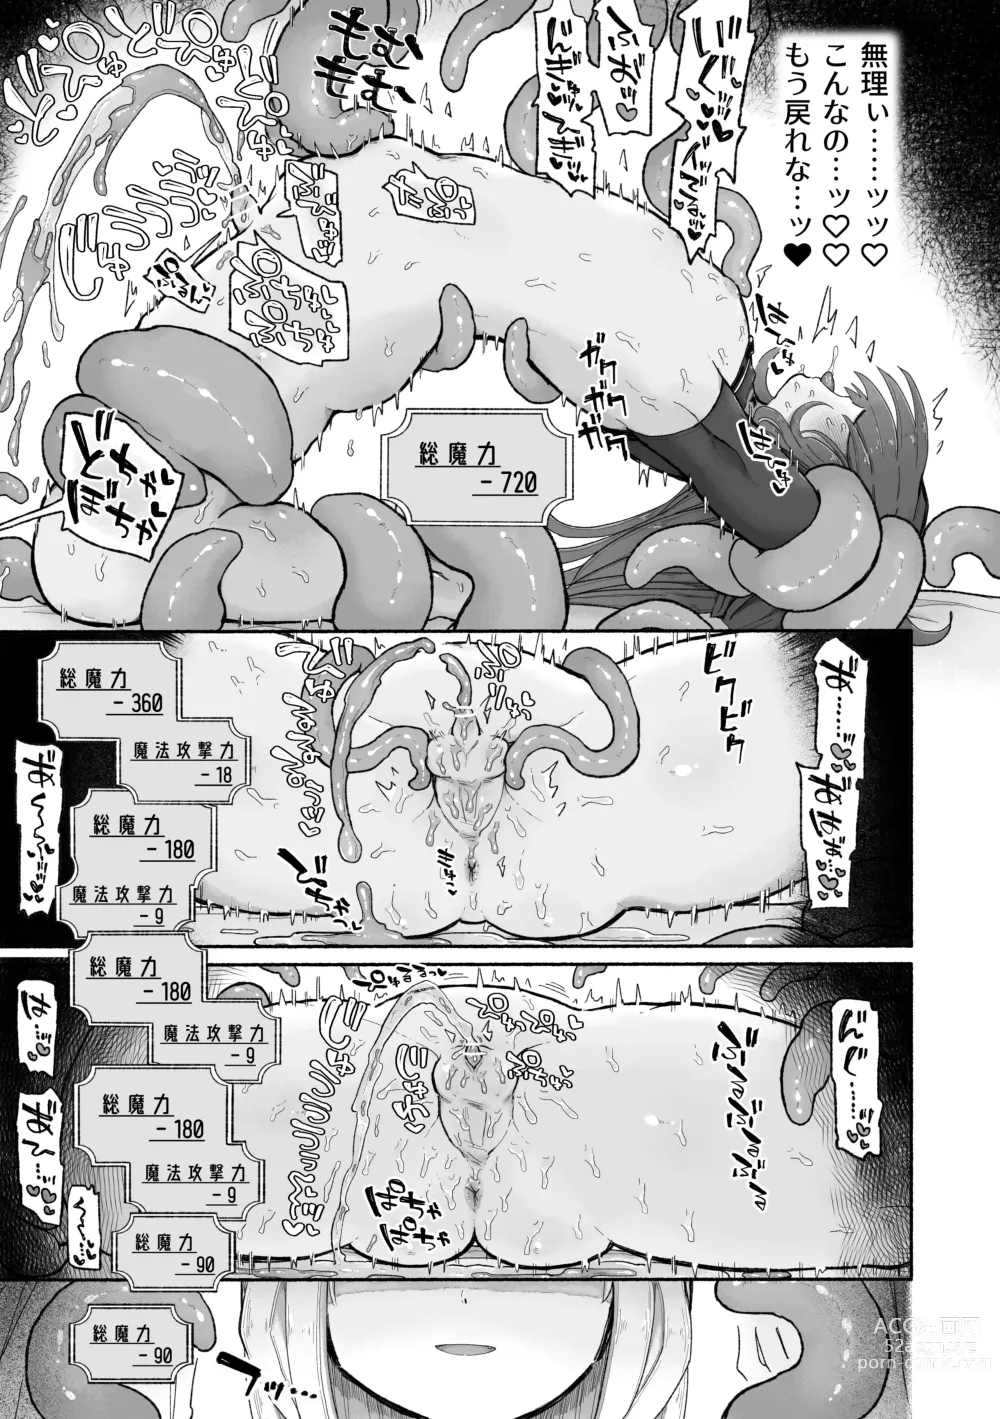 Page 21 of doujinshi Do hamari chui no kyosei danjon! 〜Mugen shasei no kairaku jigoku e yokoso〜